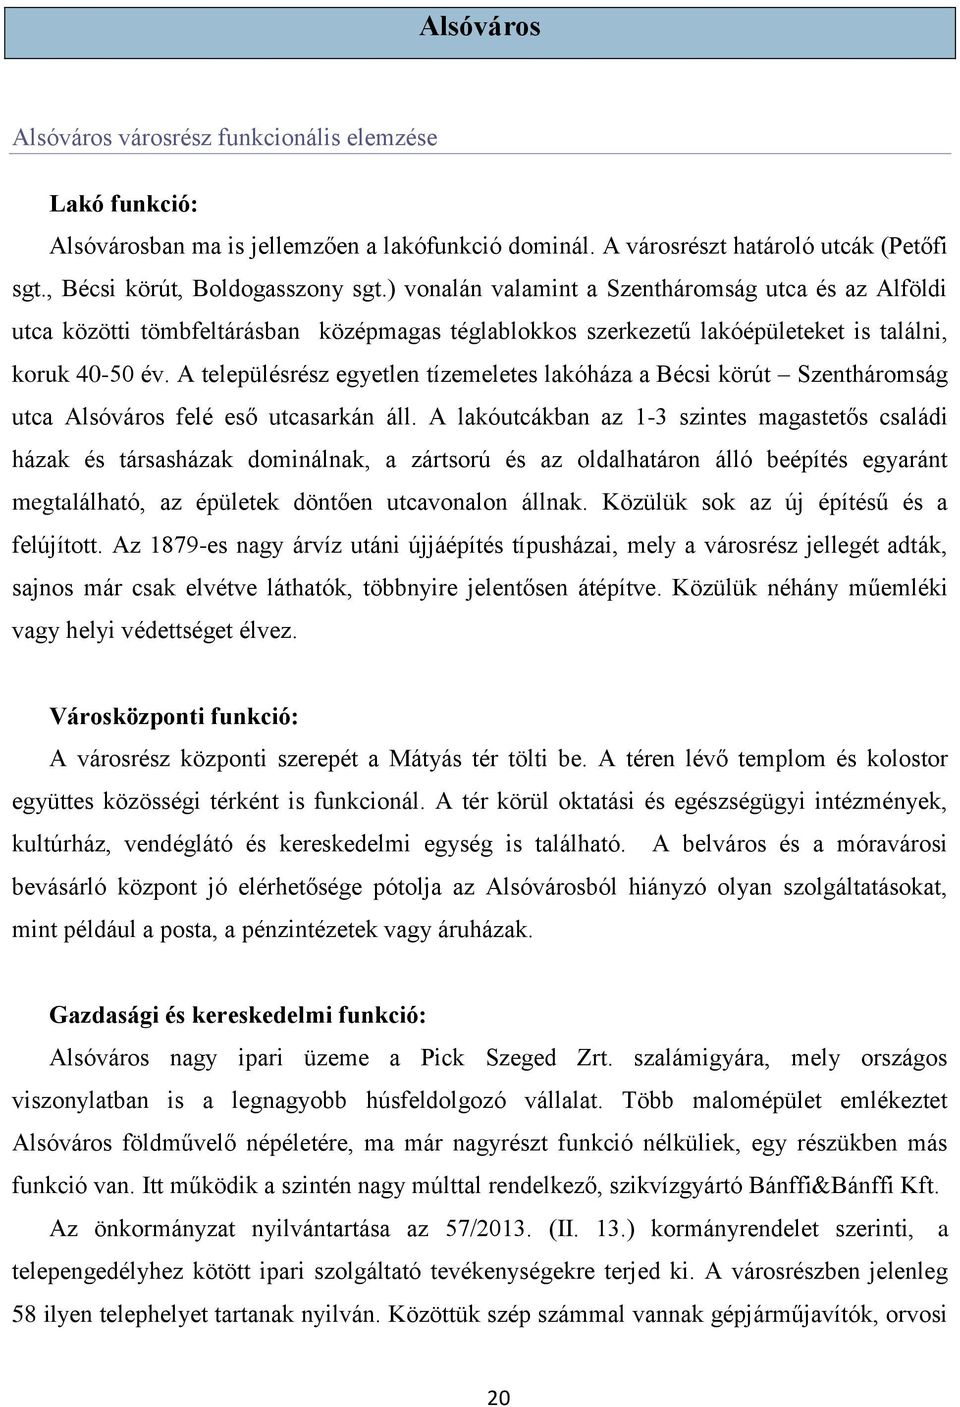 Szeged Megyei Jogú Város Integrált Településfejlesztési Stratégiája ( ) 1.  sz. módosítással egységes szerkezetben (TERVEZET) - PDF Free Download